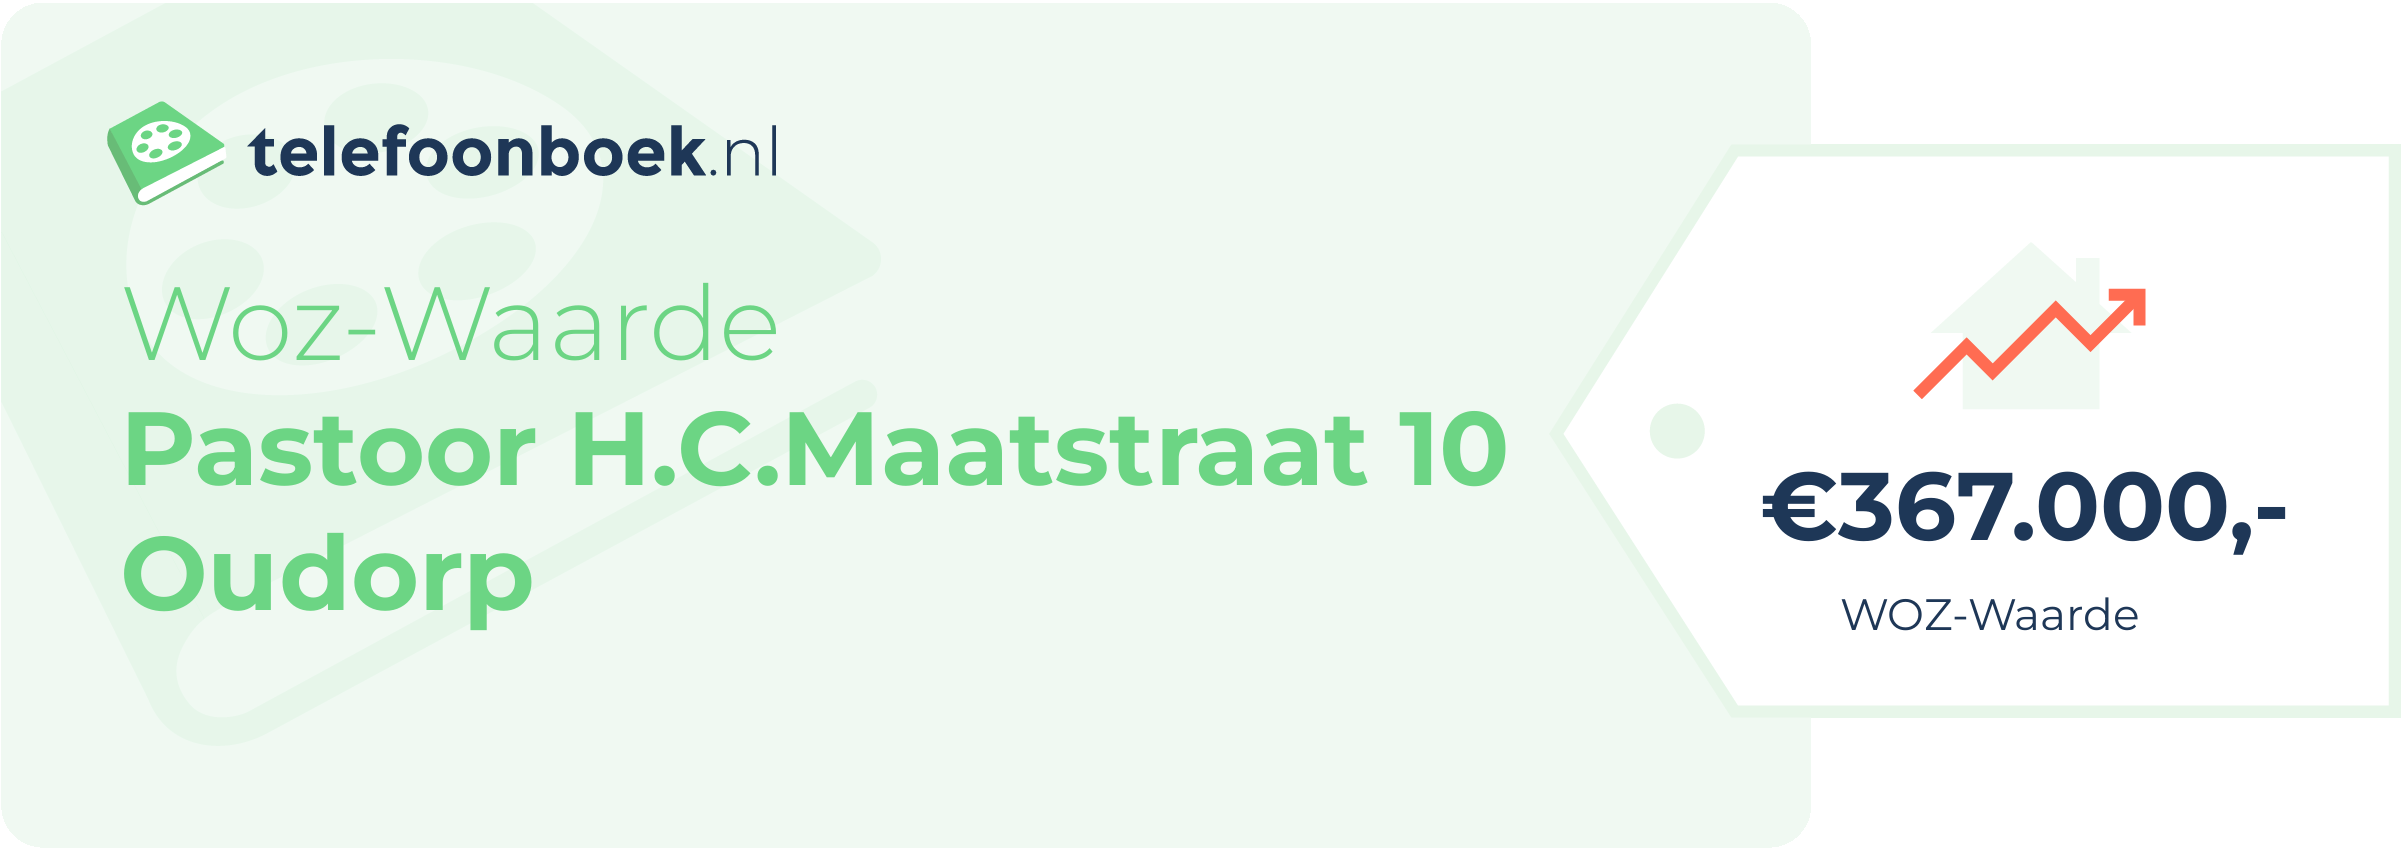 WOZ-waarde Pastoor H.C.Maatstraat 10 Oudorp